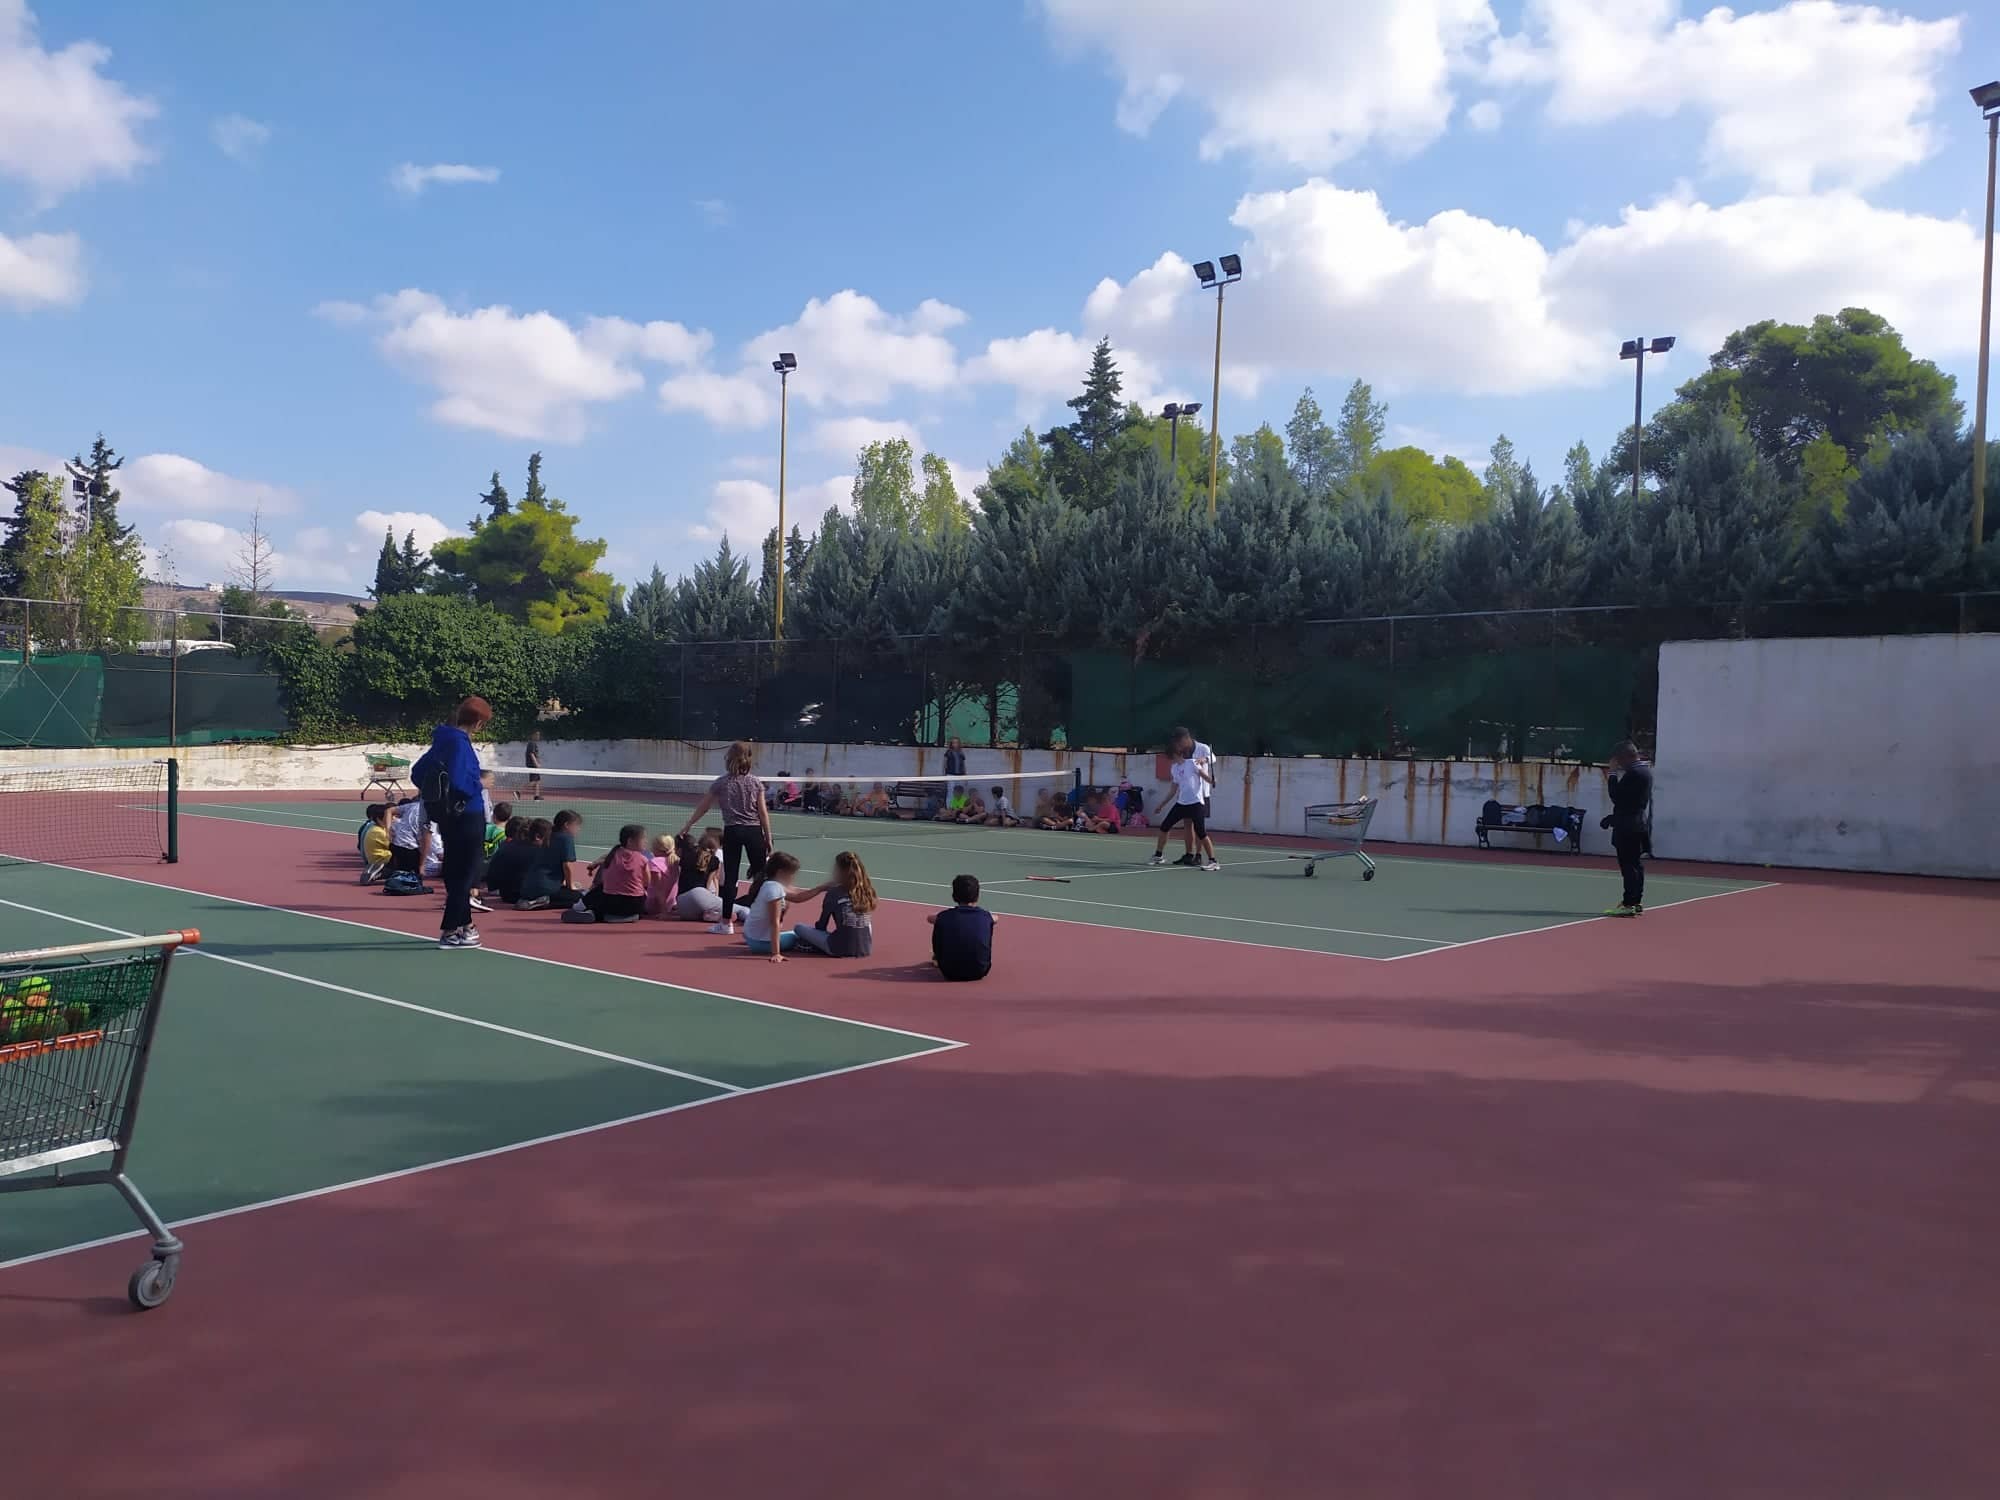 Οι μαθητές ασκούνται στο γήπεδο τένις με την καθοδήγηση των προπονητών.